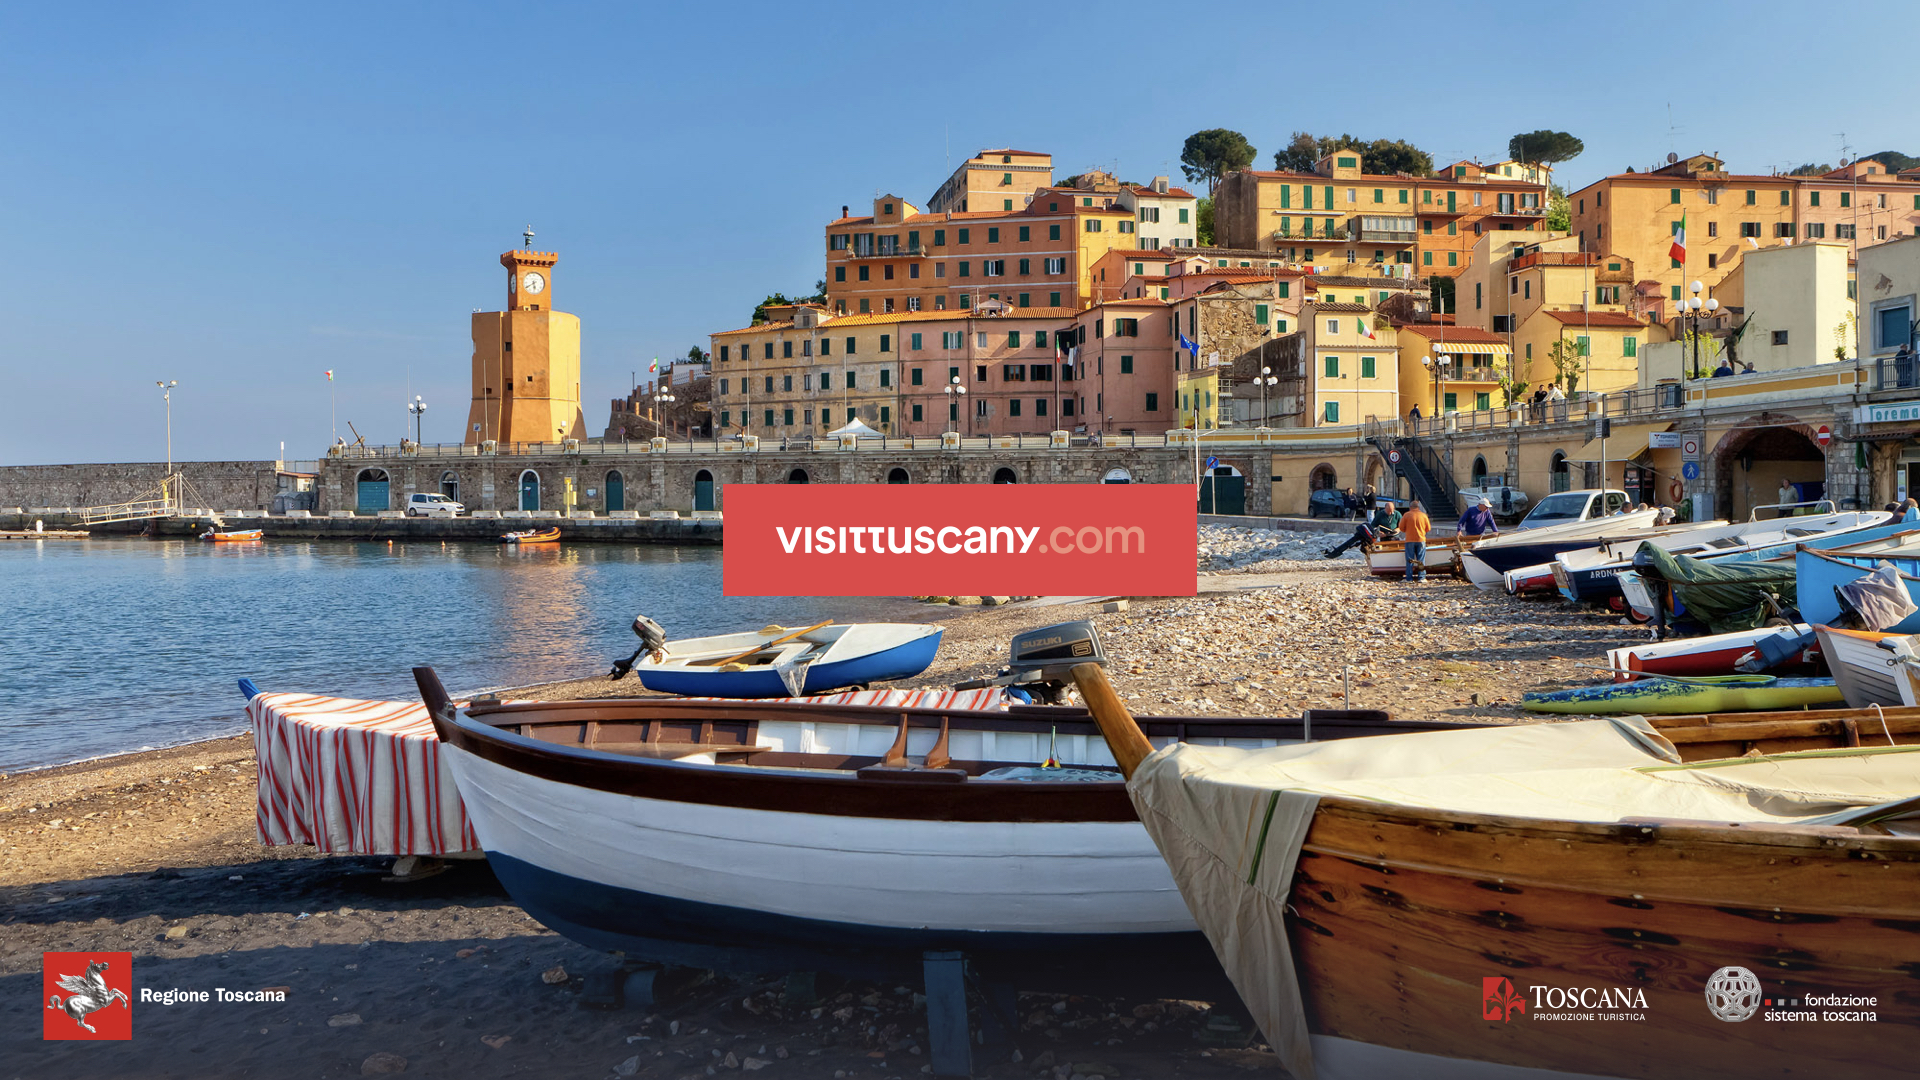 Visittuscany.com: il nuovo volto digitale del turismo in Toscana